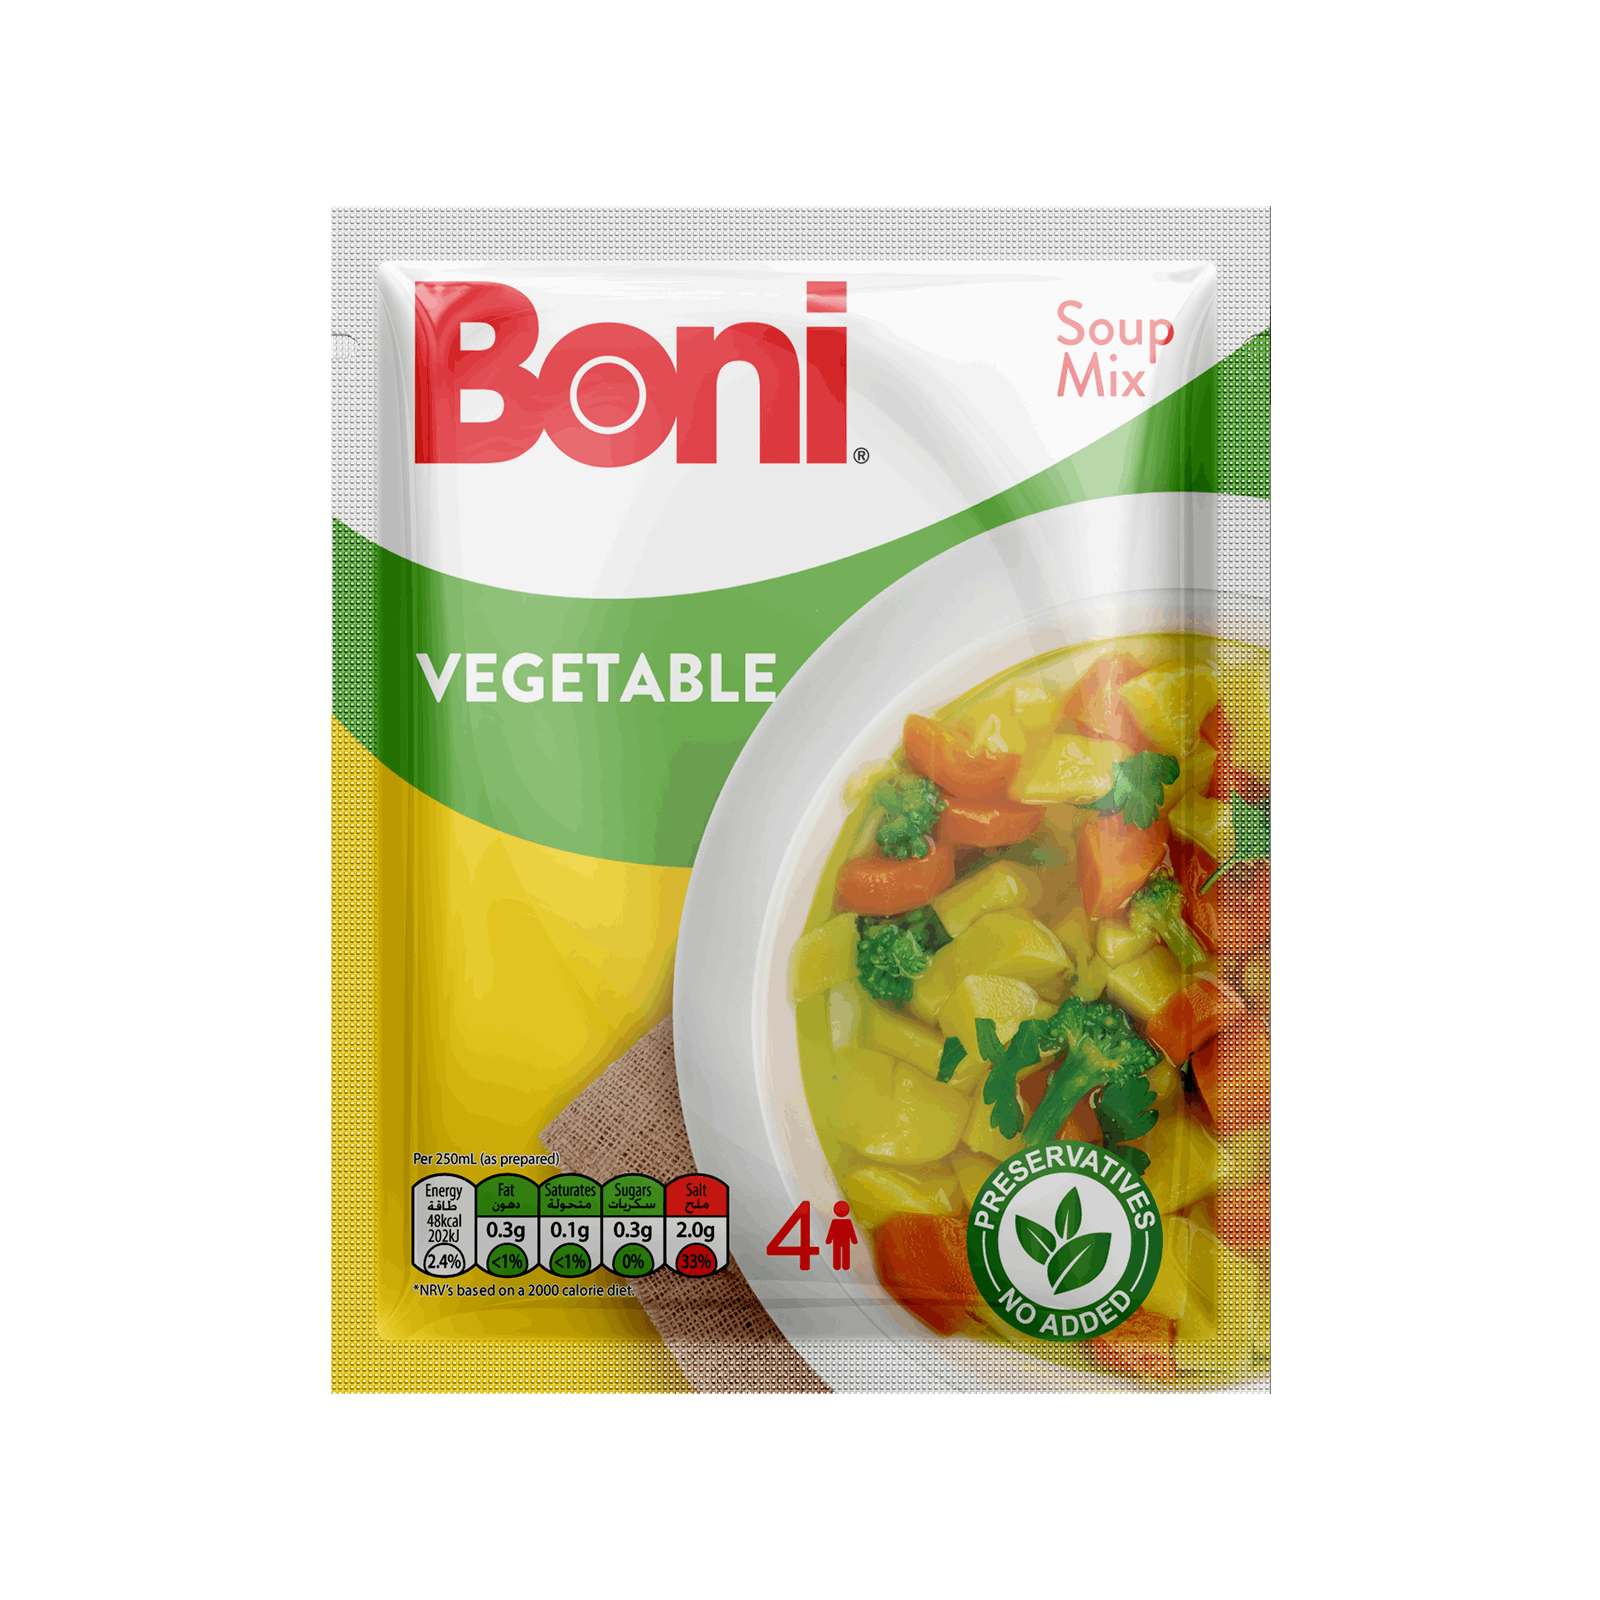 Boni Soup Mixes